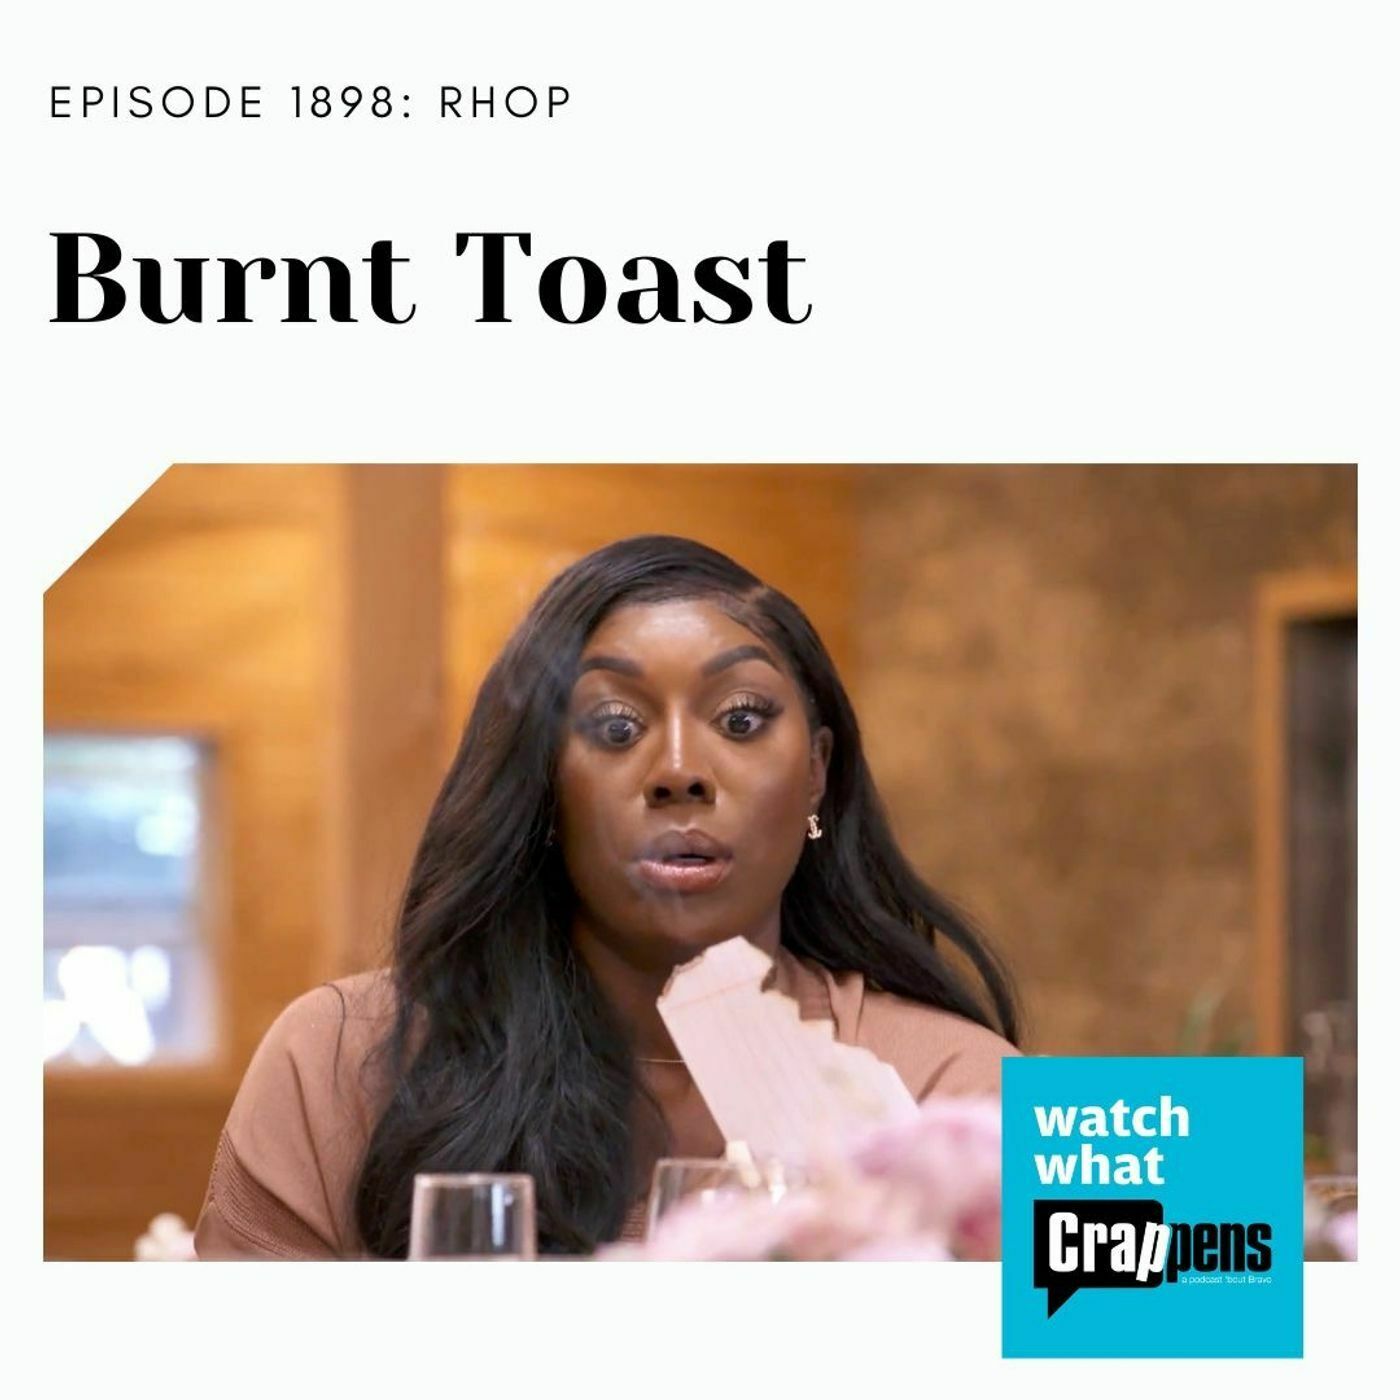 RHOP: Burnt Toast